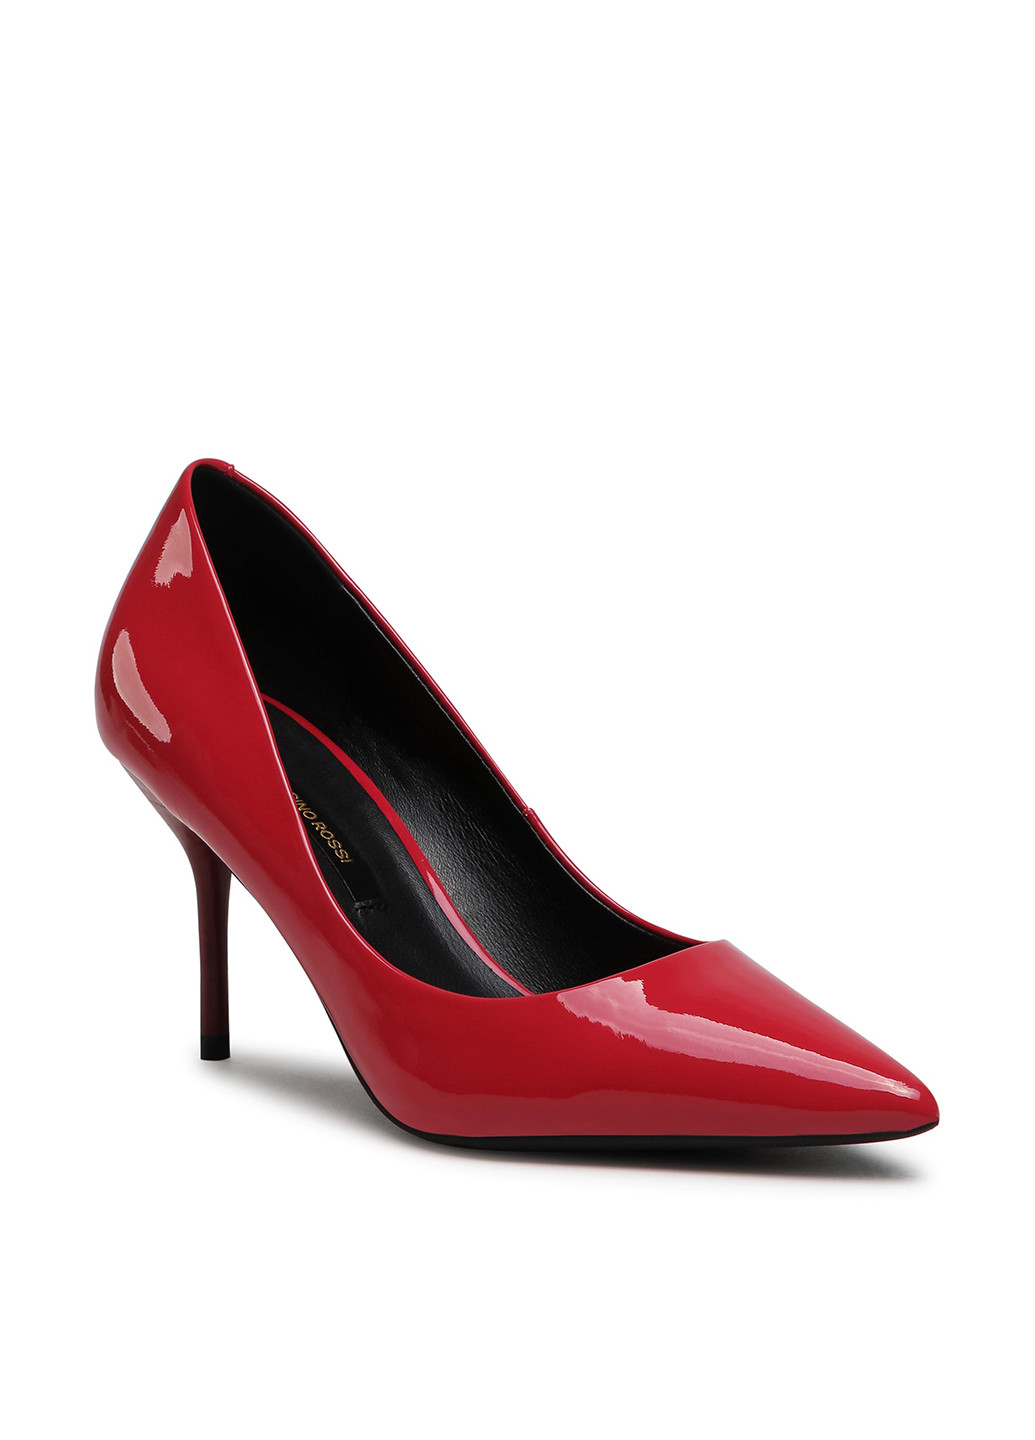 Туфлі V710-03-1 Gino Rossi туфлі-човники однотонні червоні кежуали